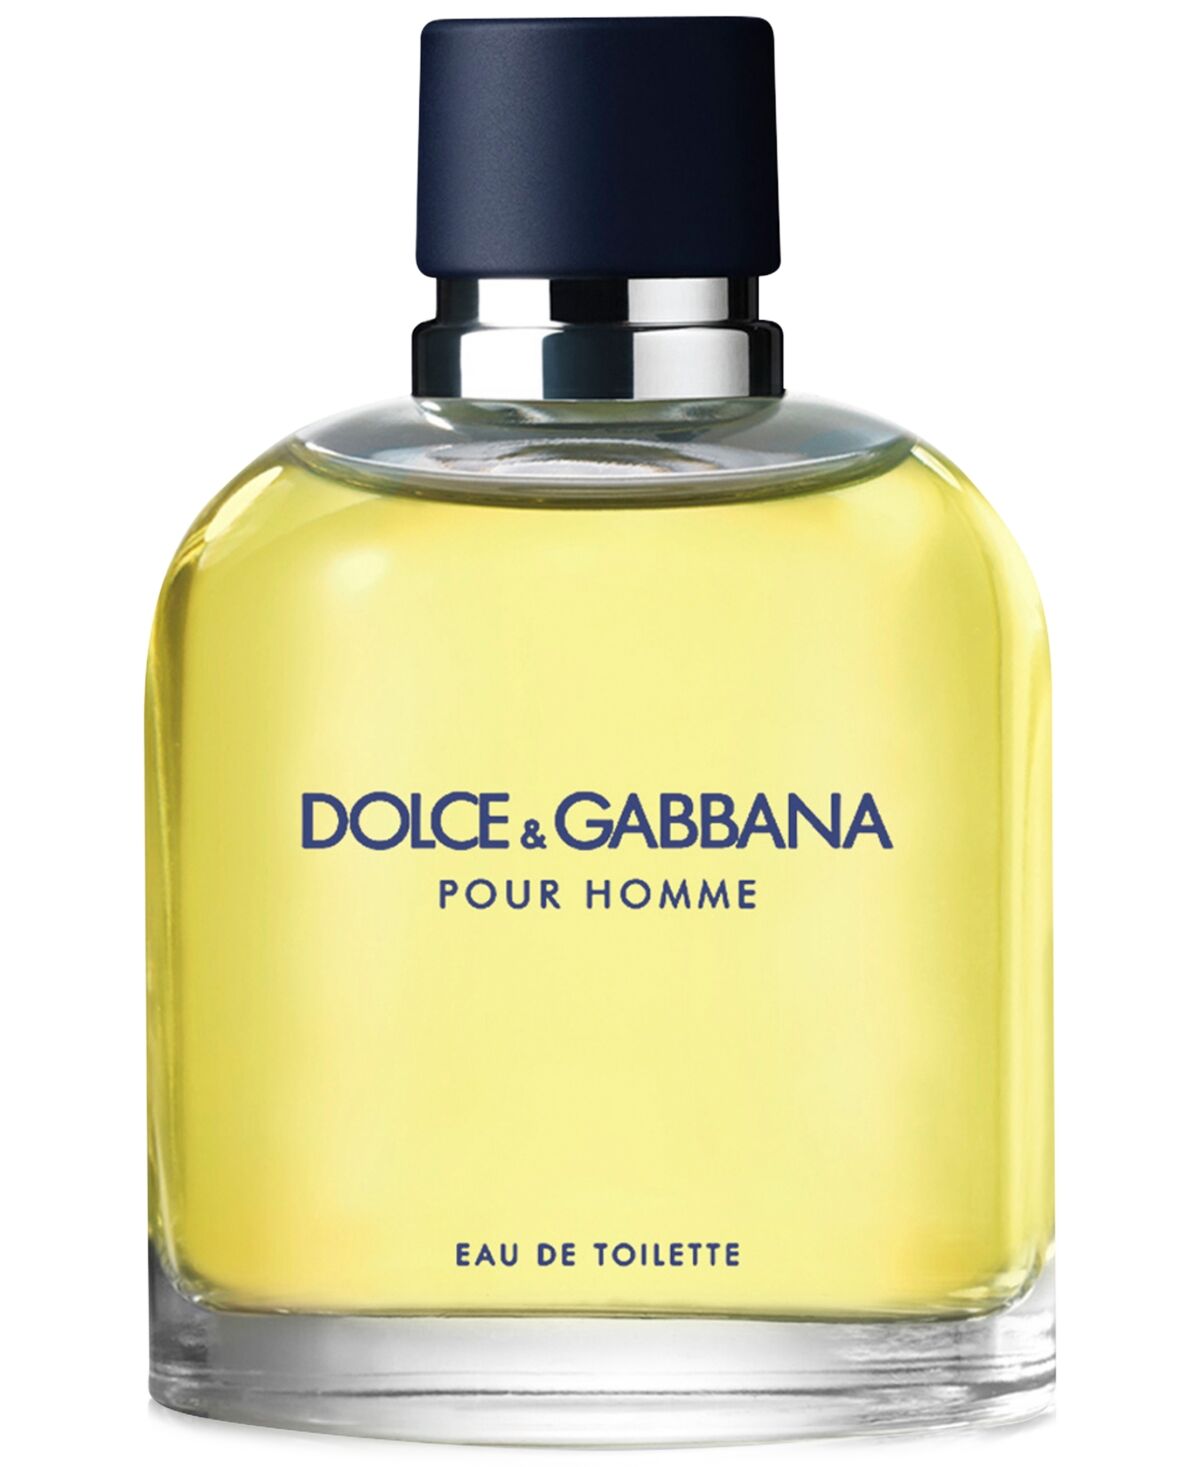 Dolce & Gabbana Men's Pour Homme Eau de Toilette Spray, 4.2 oz.